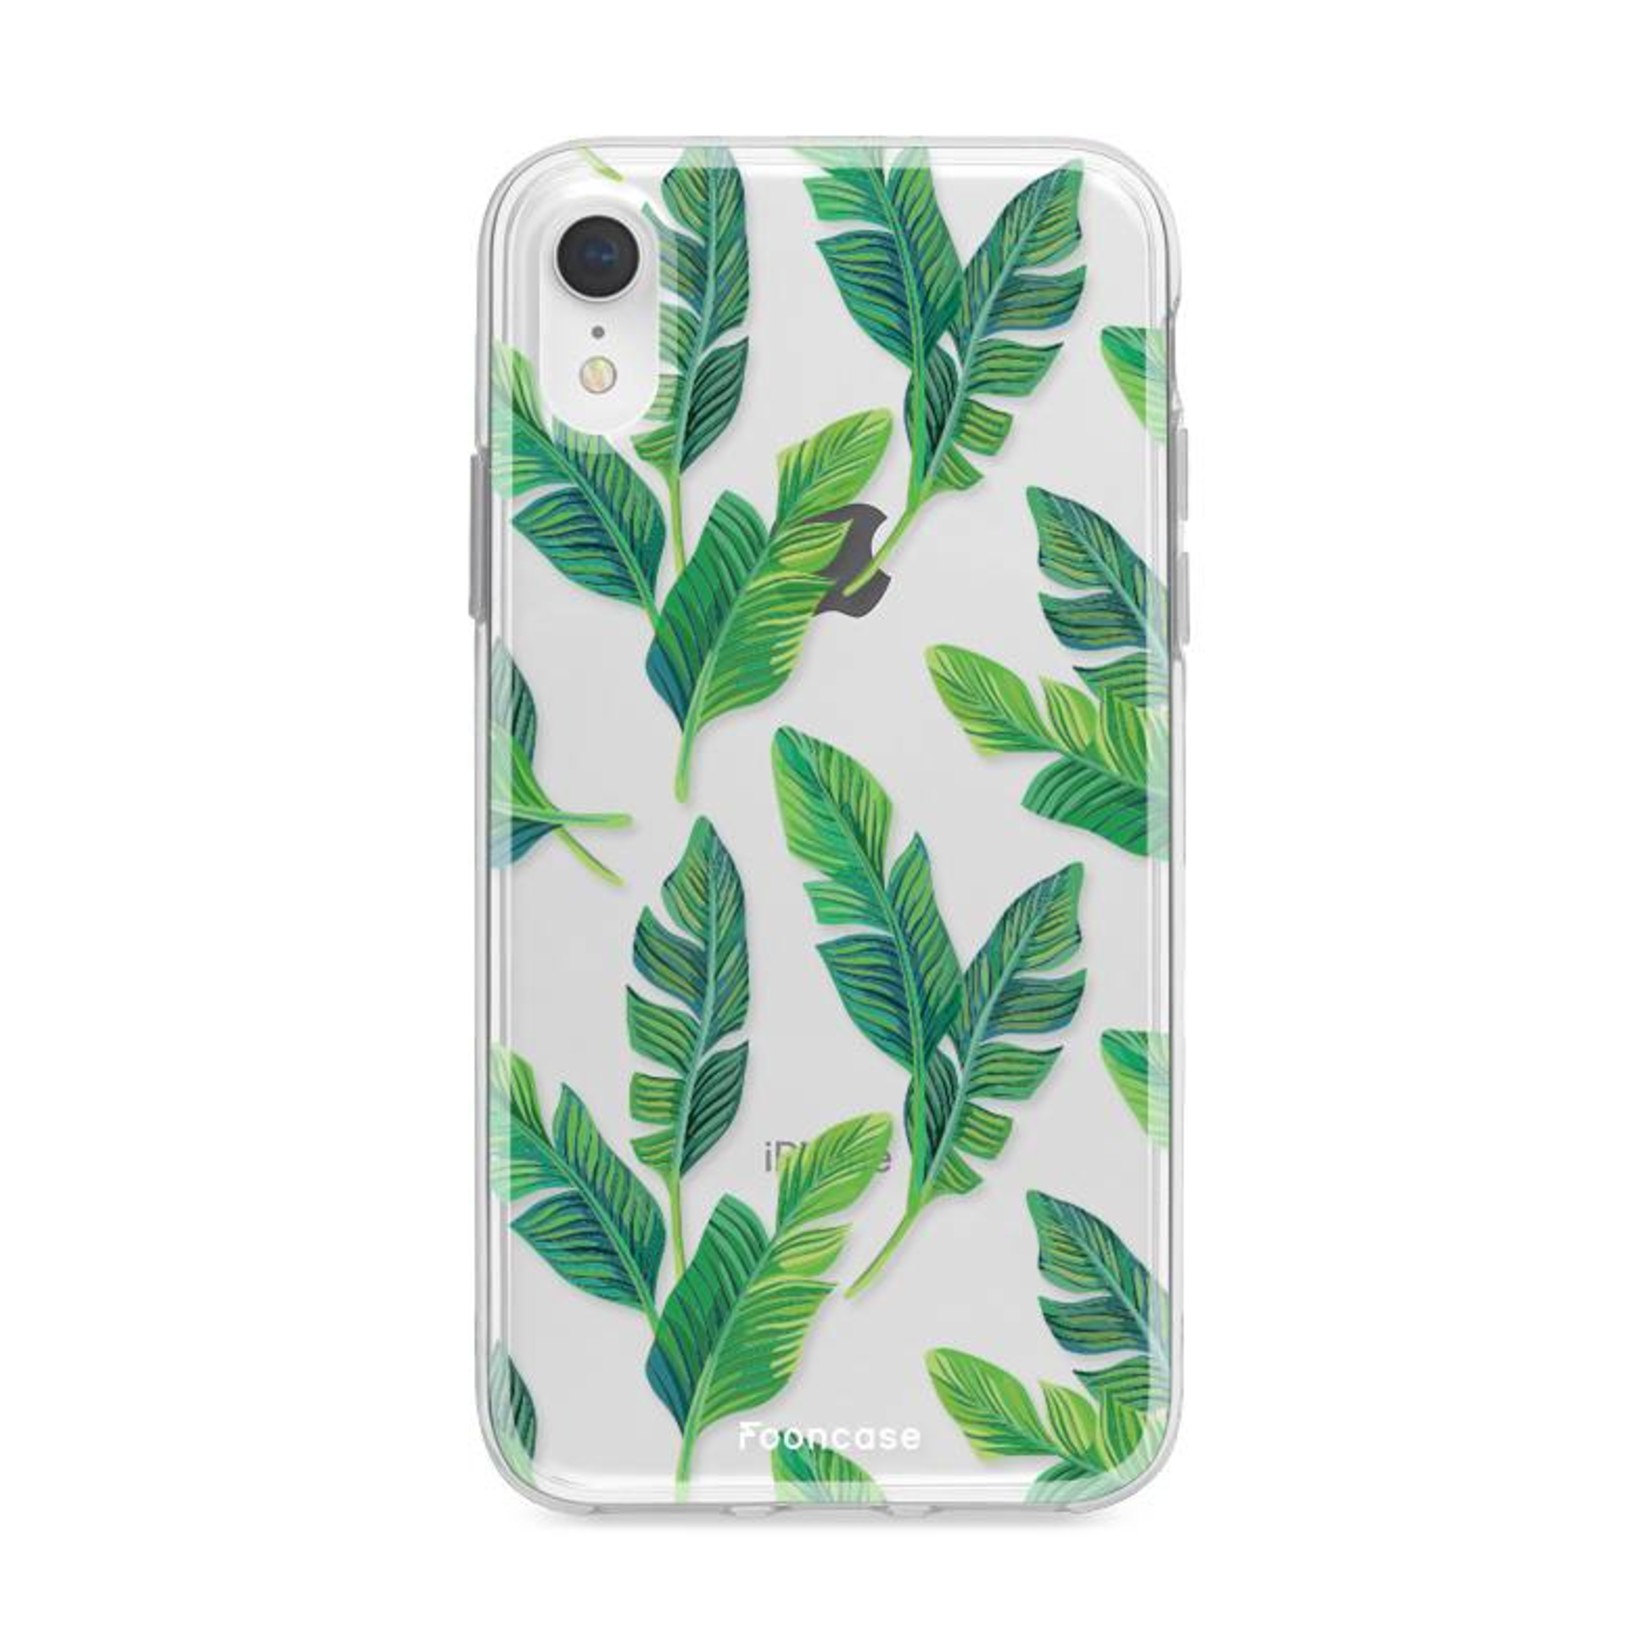 FOONCASE Iphone XR Case - Banana leaves